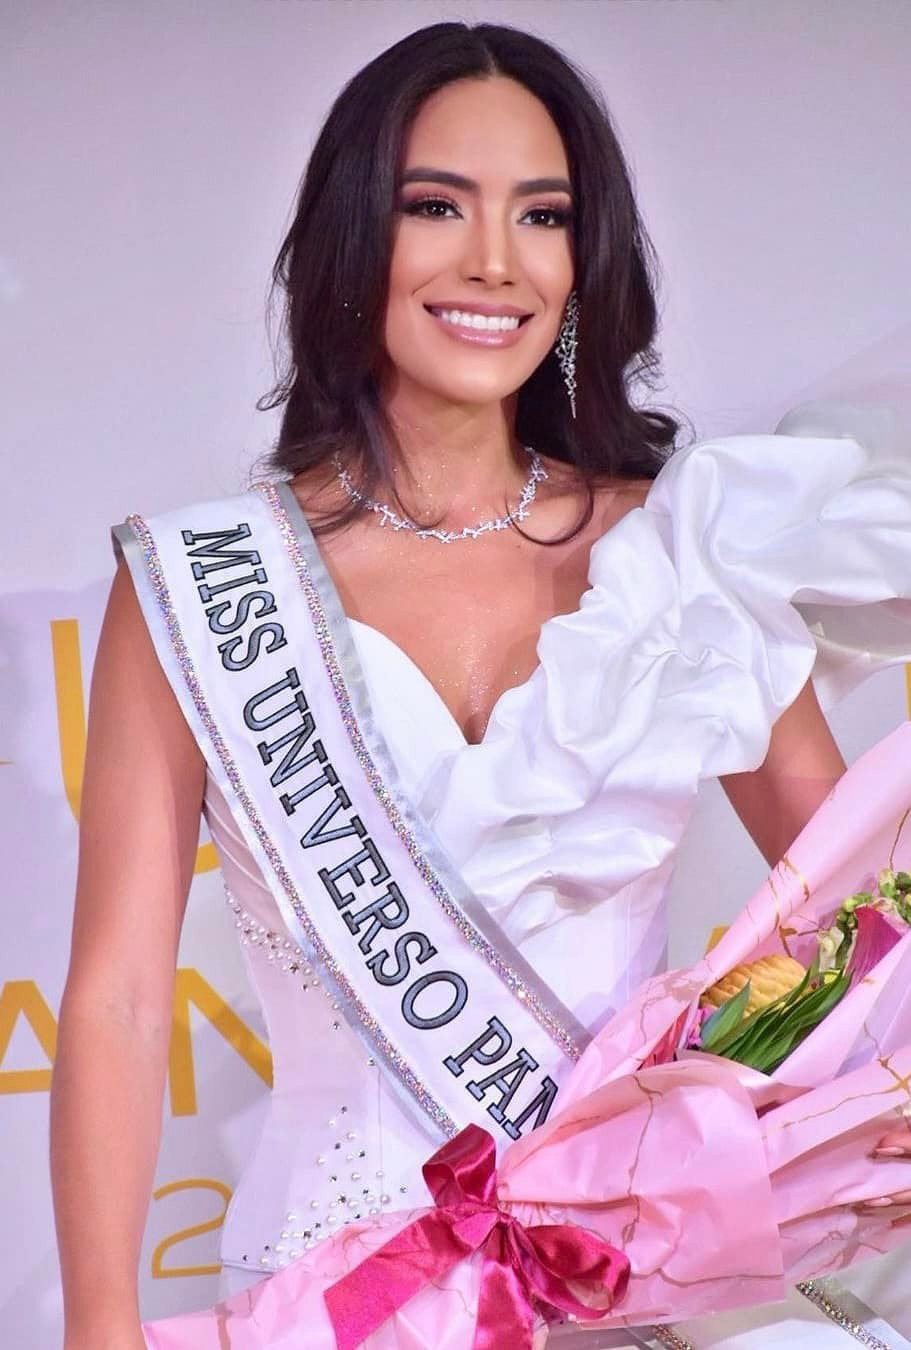 ¡Eso se sabía! Solaris Barba es la Miss Panamá para Miss Universo 2022 X0Mfp9